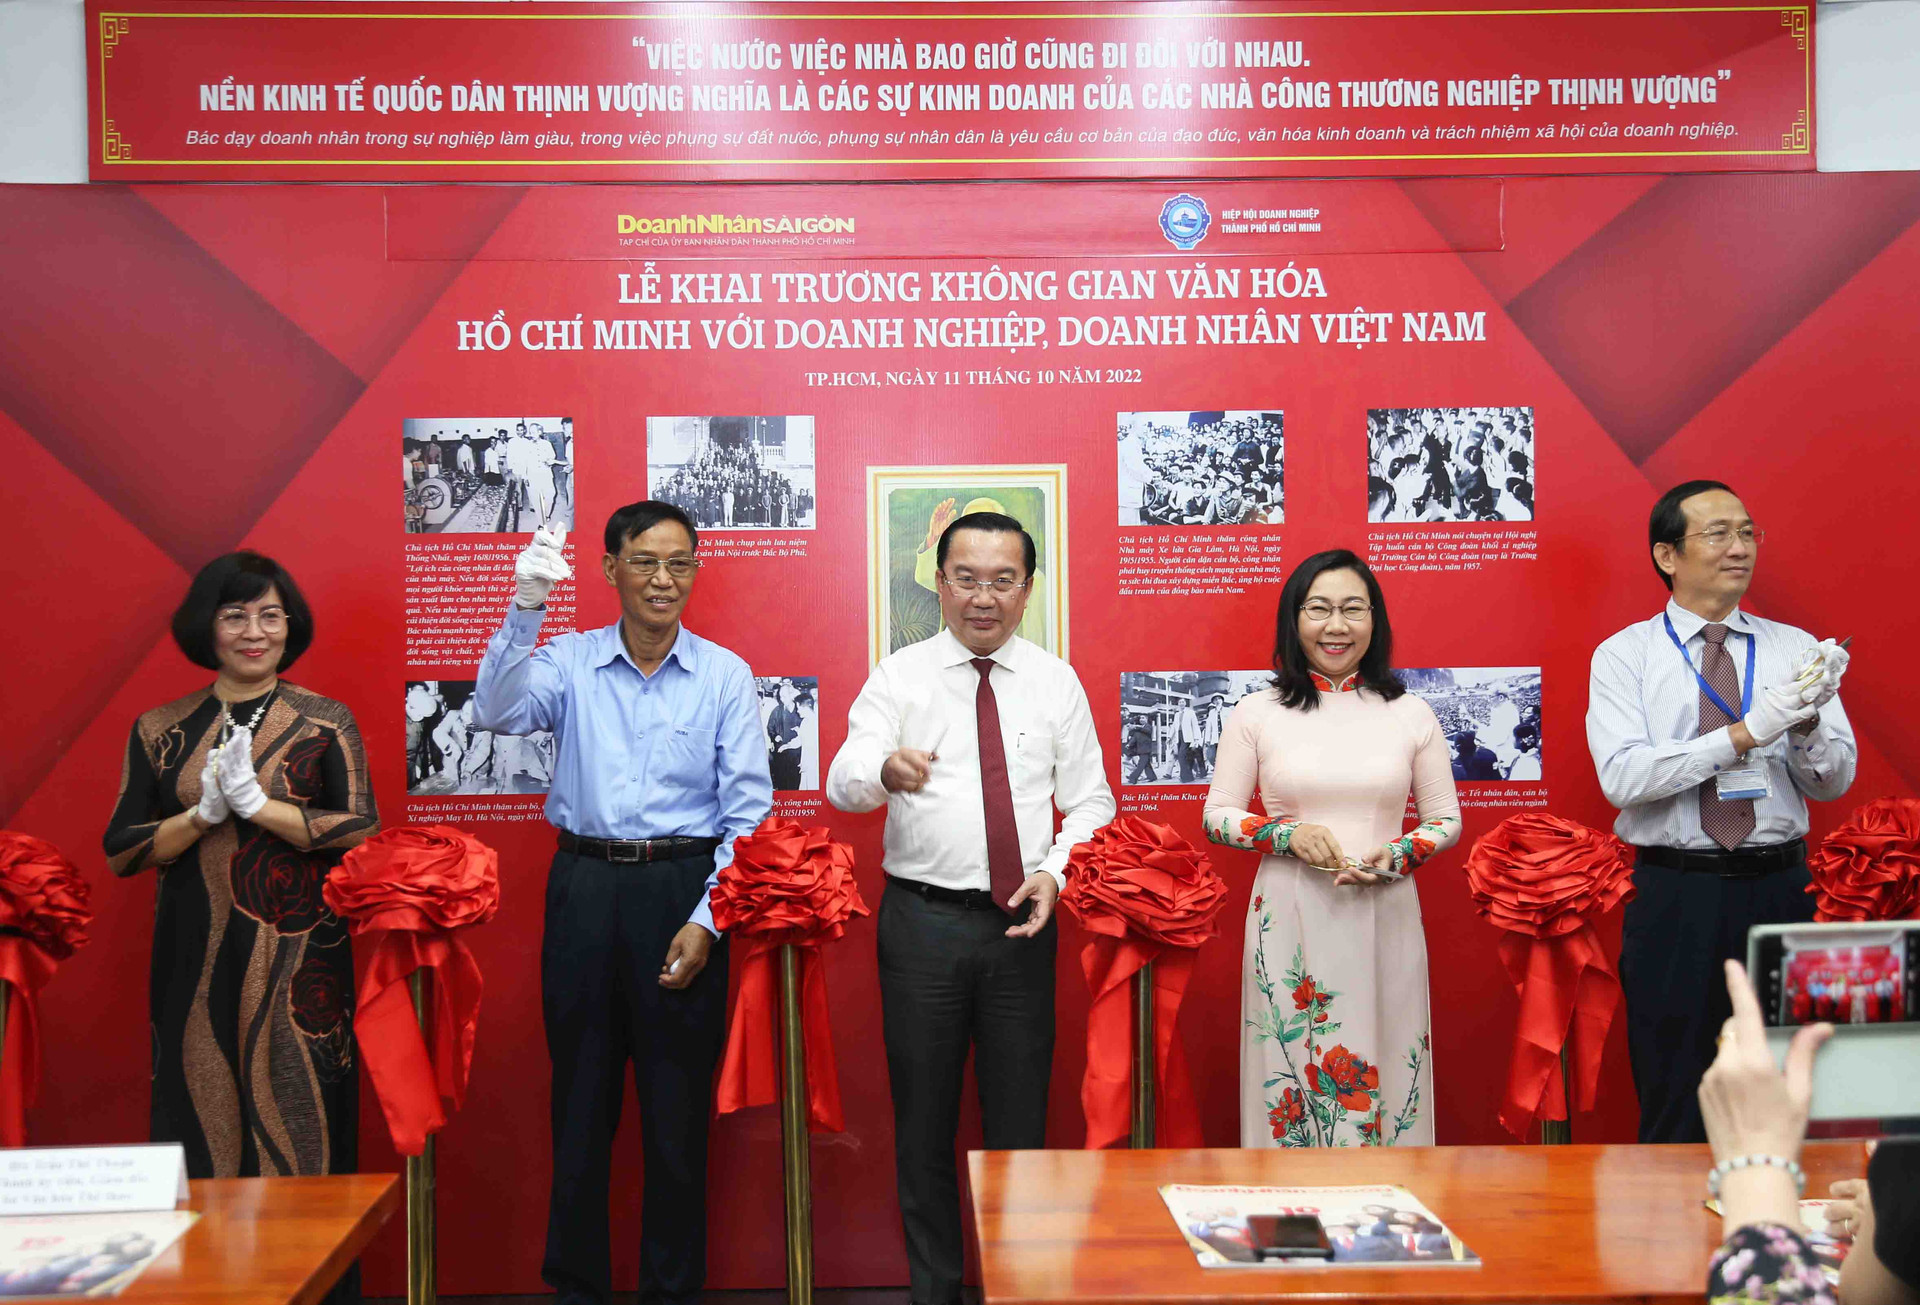 Ra mắt không gian văn hóa Hồ Chí Minh với doanh nhân, doanh nghiệp